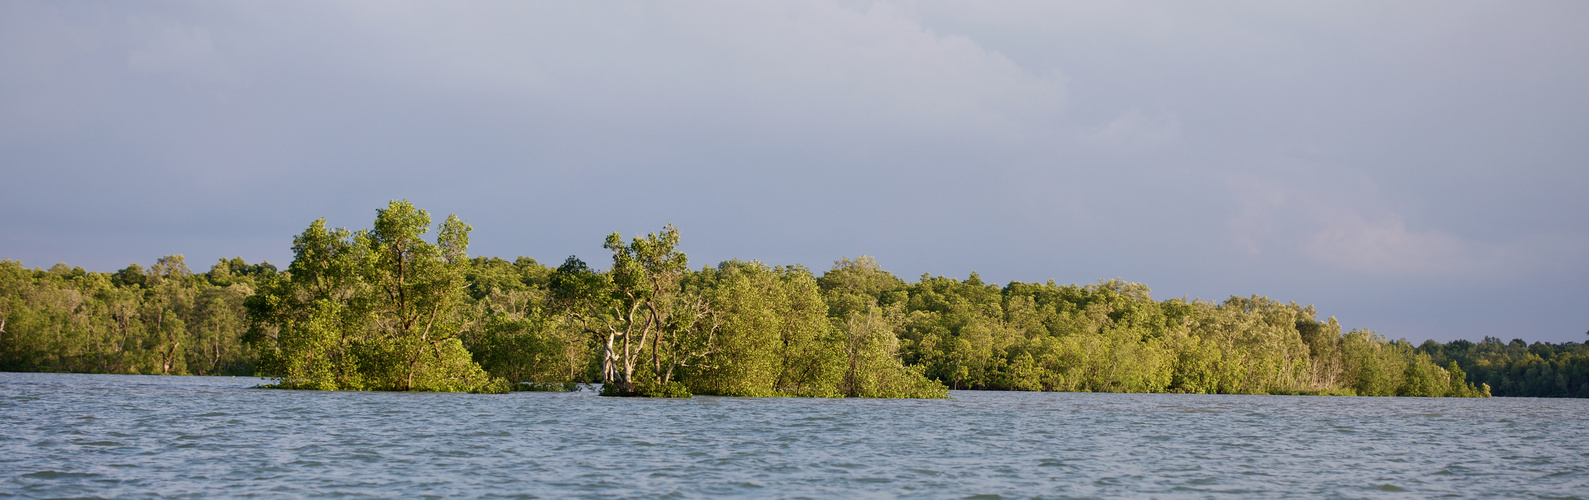 Mangrovensumpf bei Flut